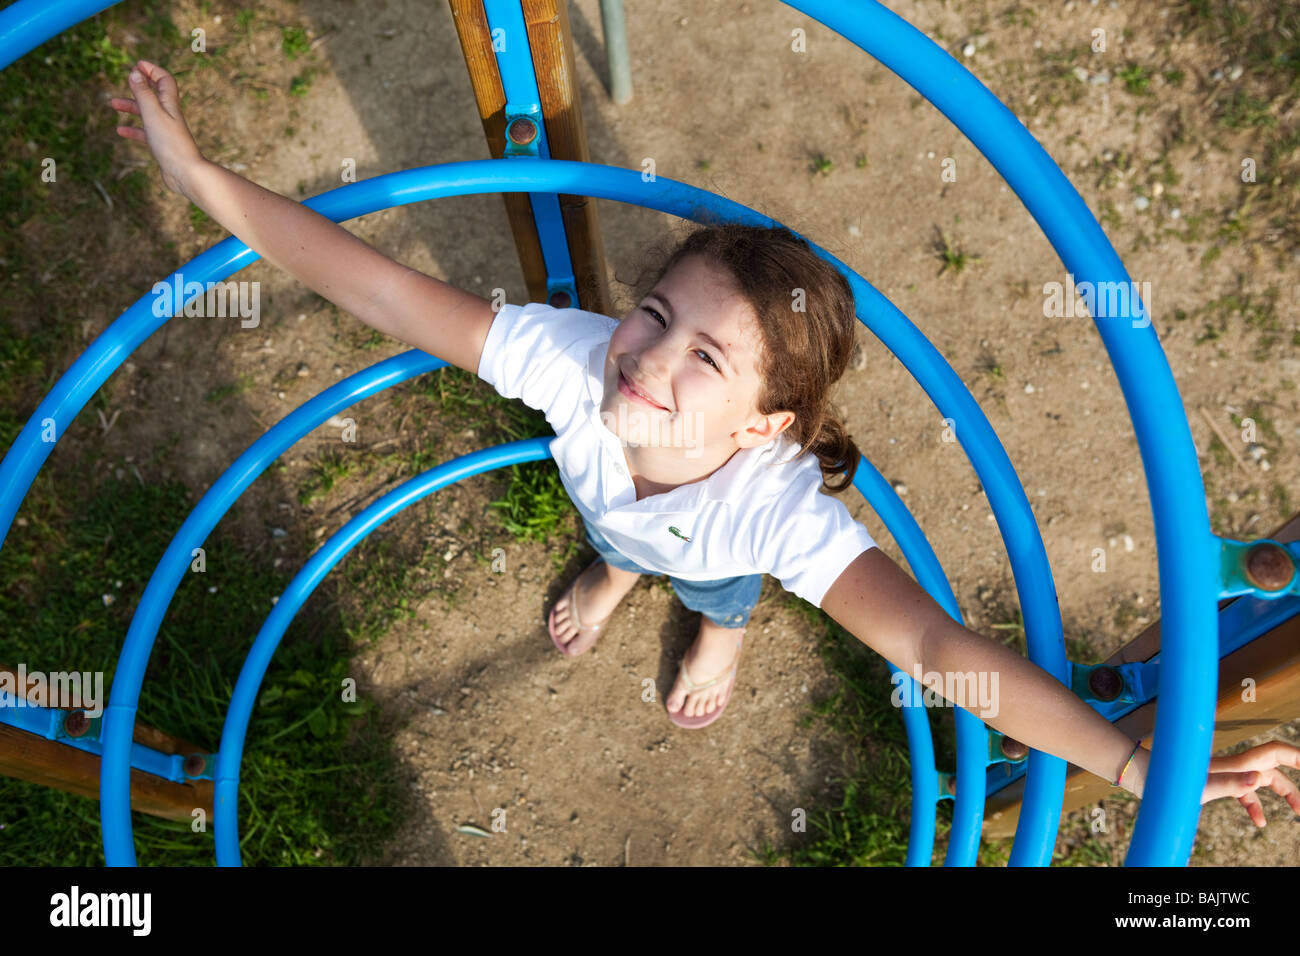 Enfant jouant seul dans les joints toriques à l'aire de jeux Banque D'Images